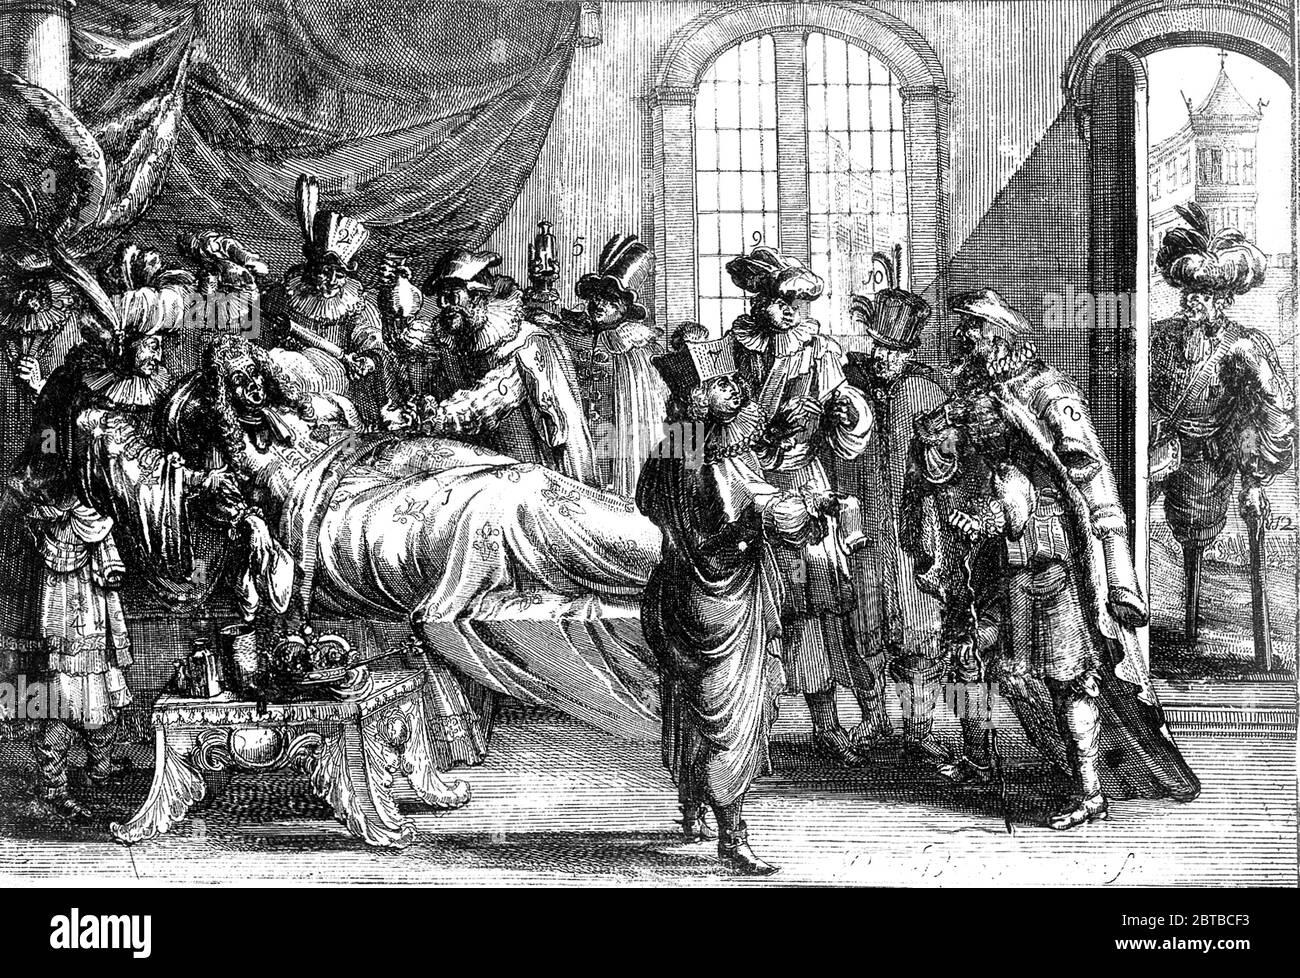 1700 CA , PARIS , FRANCE : le Roi LOUIS XIV de FRANCE LE Roi SOLEIL ( 1638 – 1715 ) de Bourbon . Portrait satyrical gravé par Romain de Hooghe , avec Louis XIV assisté par des médecins pour l'enema . - il RE SOLE - NOBLESSE - NOBILI - Nobiltà francese - REALI - ROYALTIES - CASA REGNANTE DI FRANCIA - illustrazione - illustration - gravure - incisione - RE - Luigi XIV - satira - caricature - clistère - enteroclisma - MEDICO - MEDICINA - MEDICI - MEDICI - Dottore - letto - lit - malato - malattie - sik --- ARCHIVIO GBB Banque D'Images